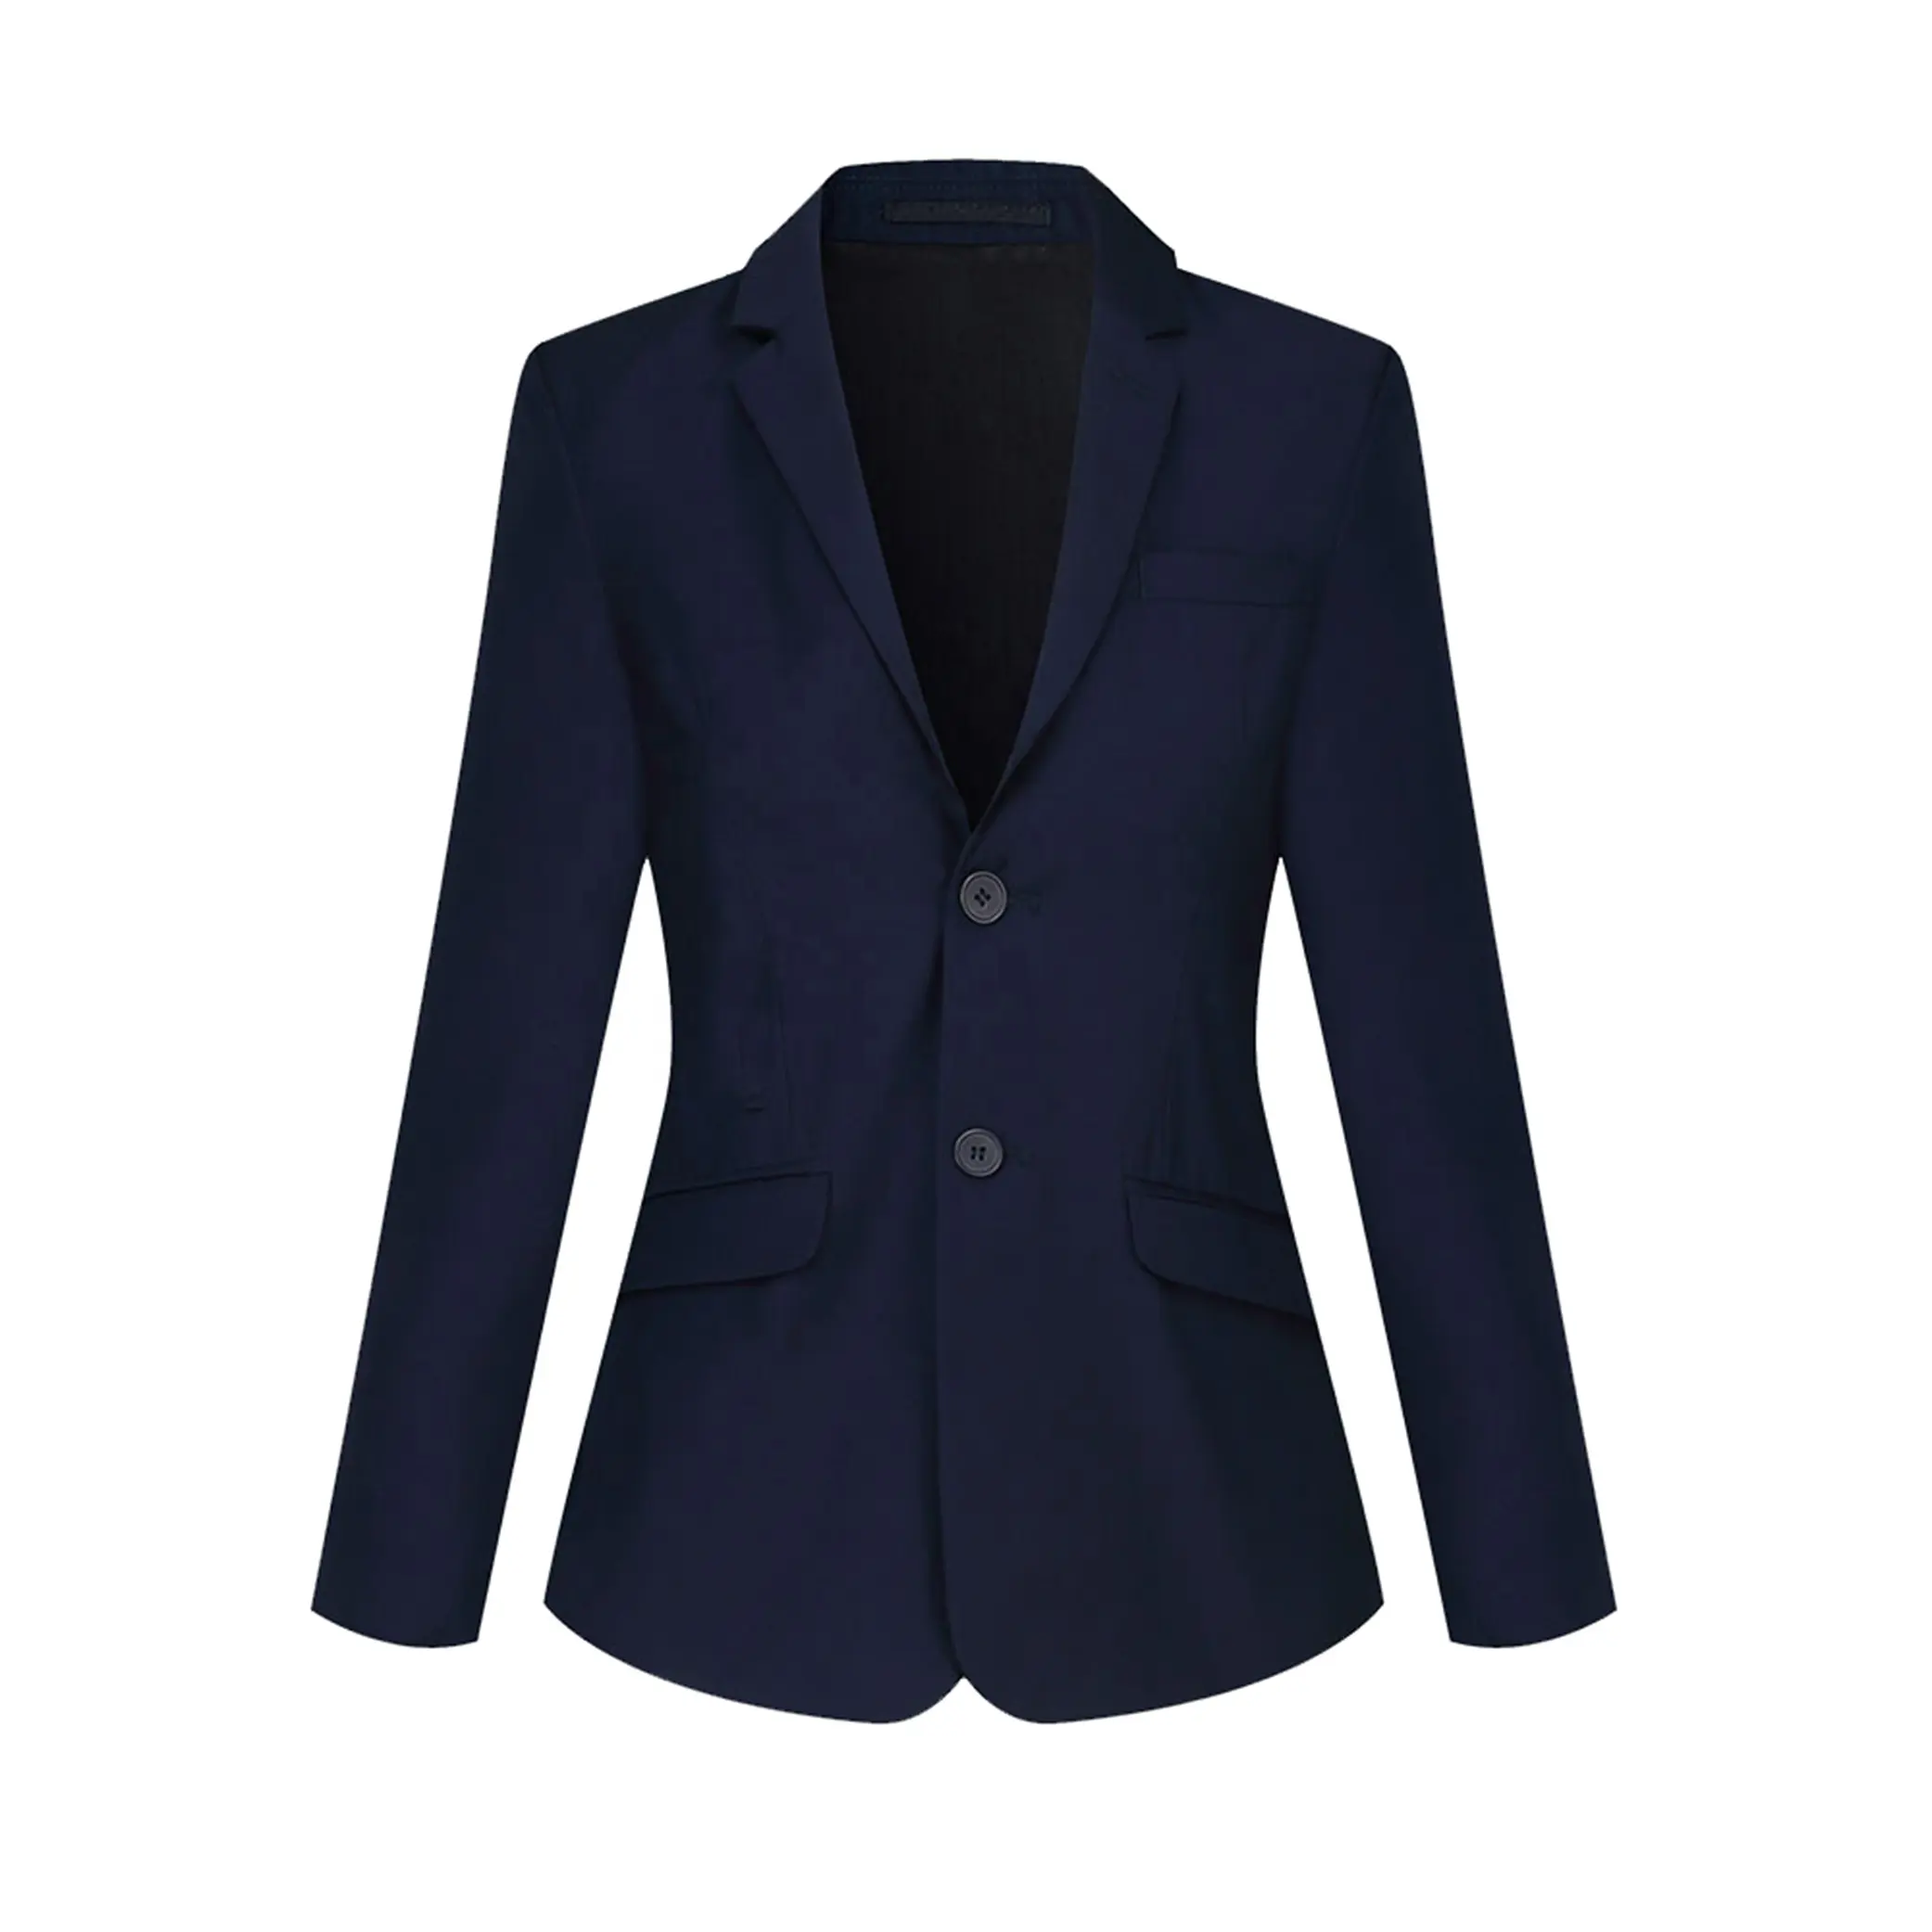 Wholesale Designs Navy Blue Colours Cotton Blazers of School Uniforms